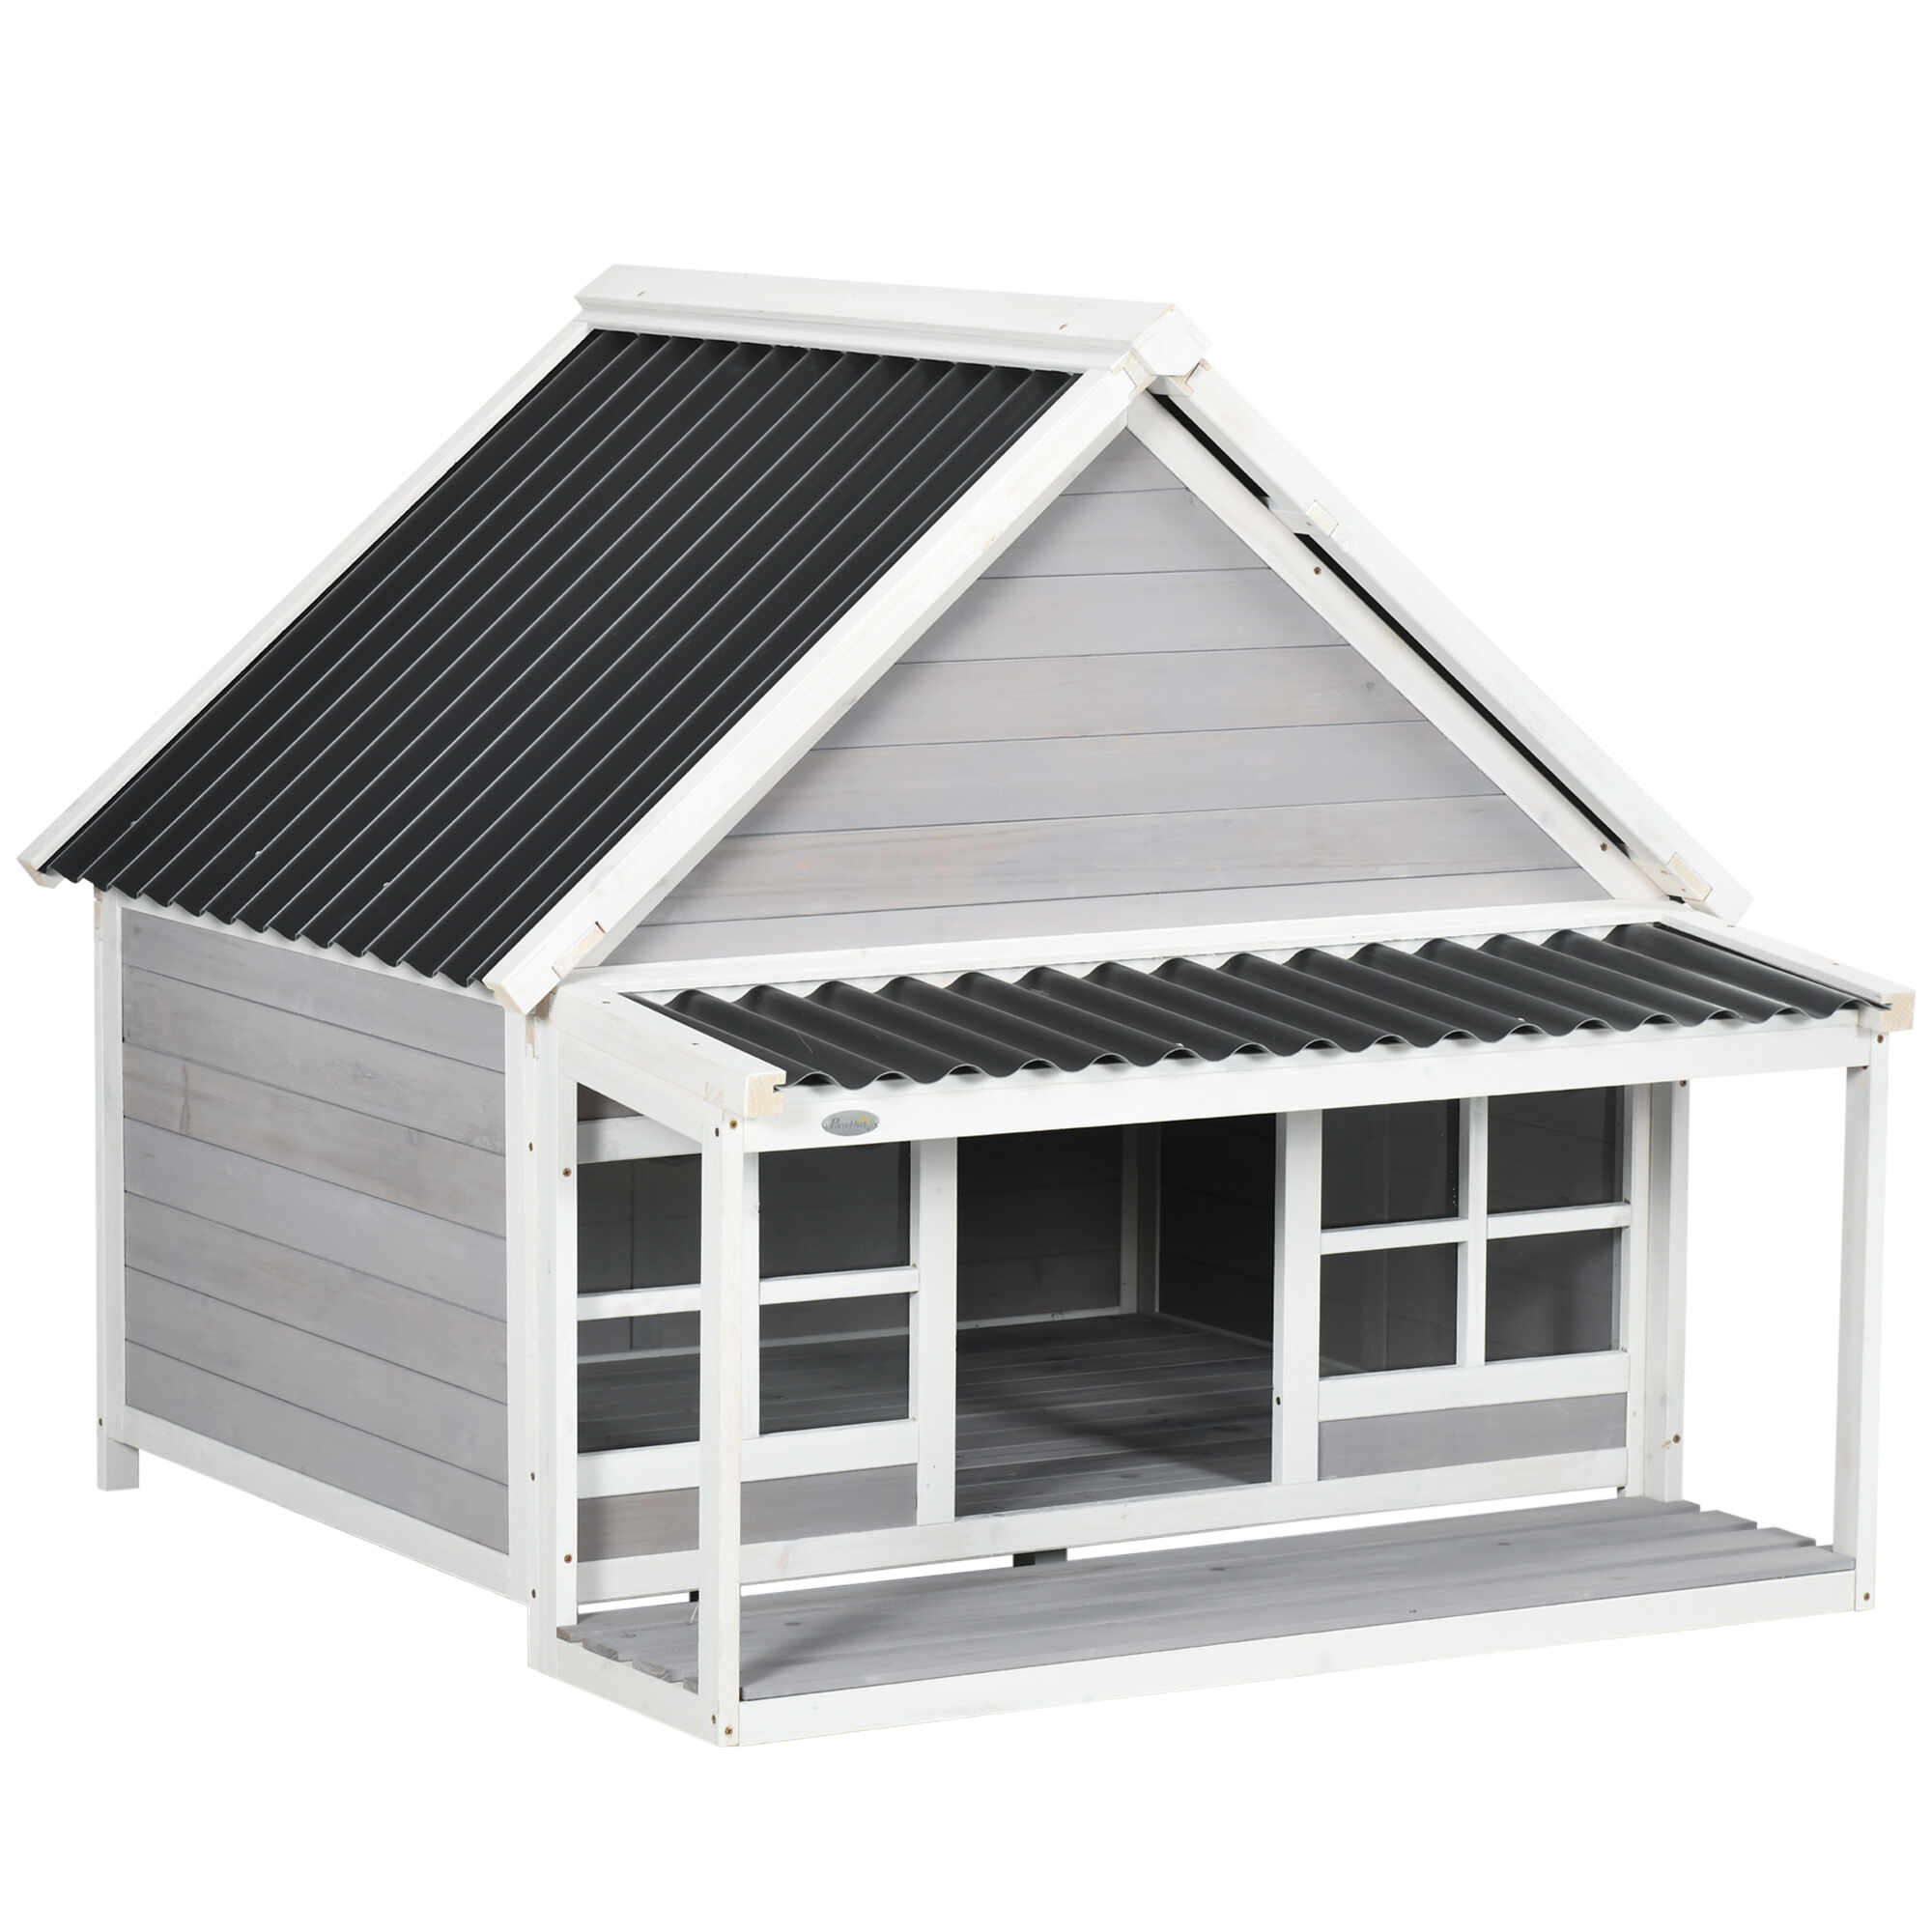 PawHut Casa pentru caini din lemn in aer liber cu veranda, casuta rezistenta la intemperii pentru animale de companie cu acoperis din PVC | AOSOM RO